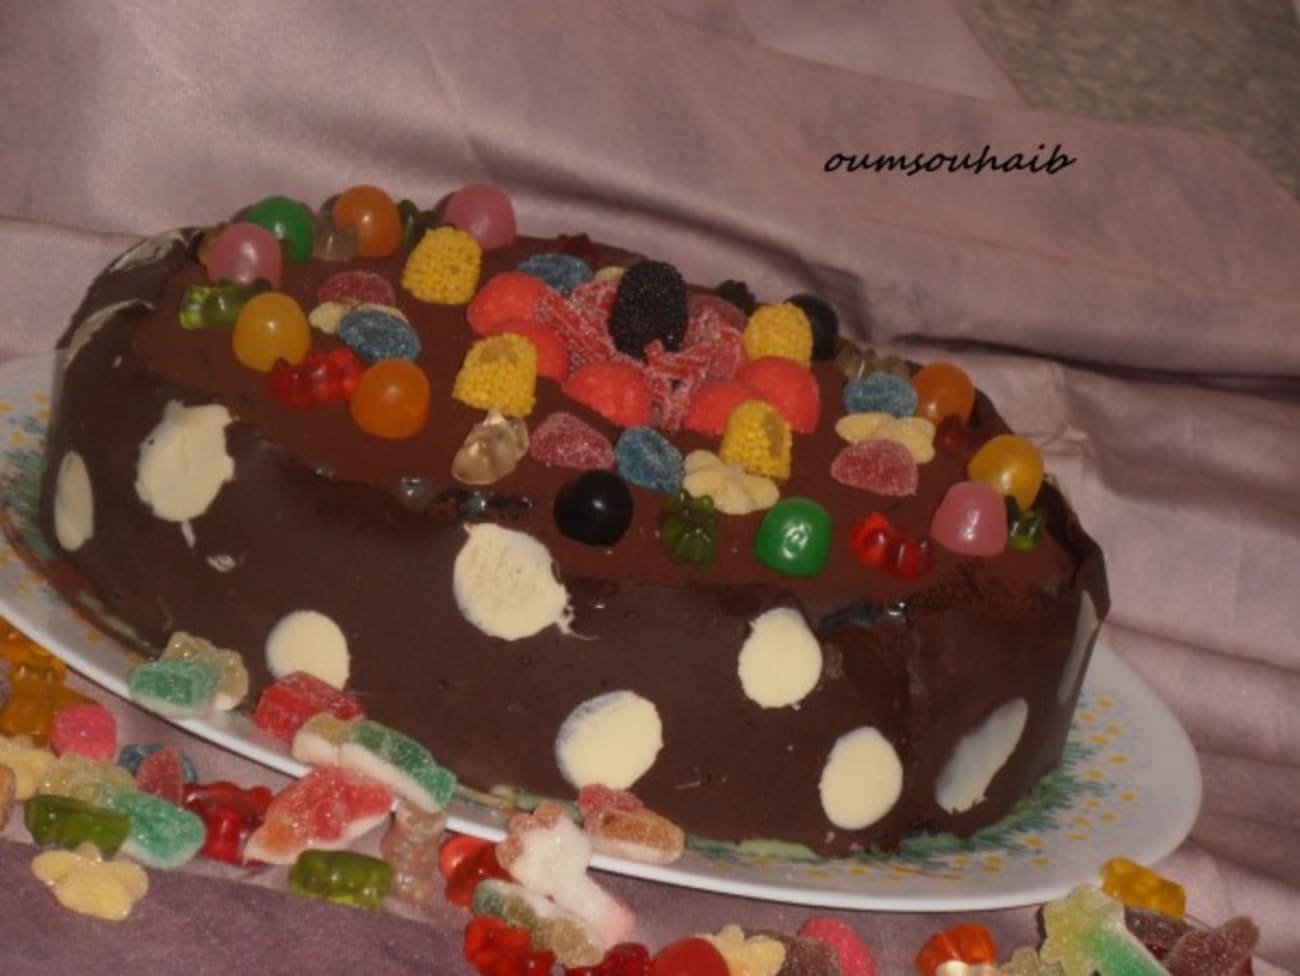 Idée de gâteau aux bonbons pour un anniversaire - Recette par Sarah